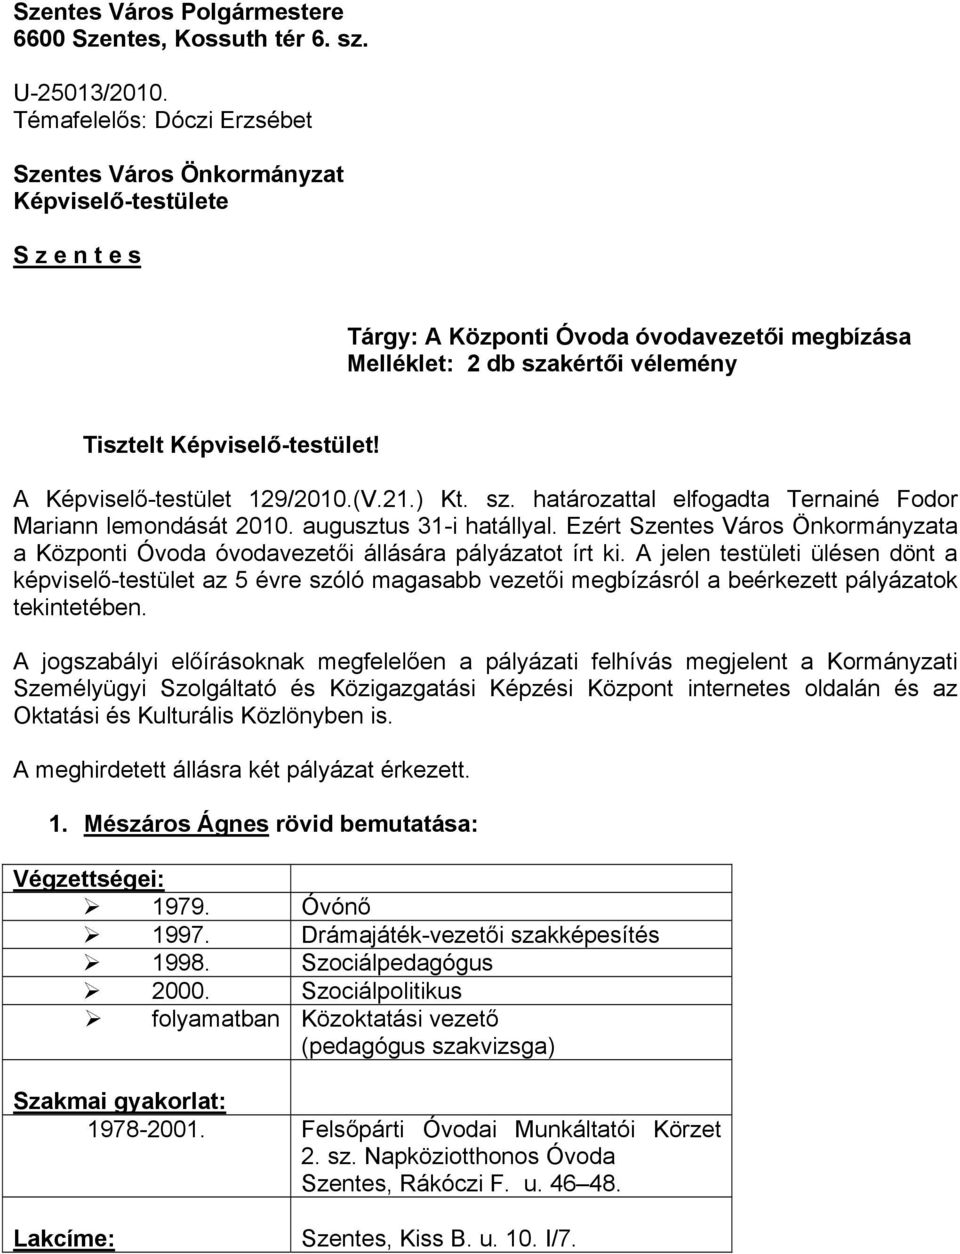 A Képviselő-testület 129/2010.(V.21.) Kt. sz. határozattal elfogadta Ternainé Fodor Mariann lemondását 2010. augusztus 31-i hatállyal.